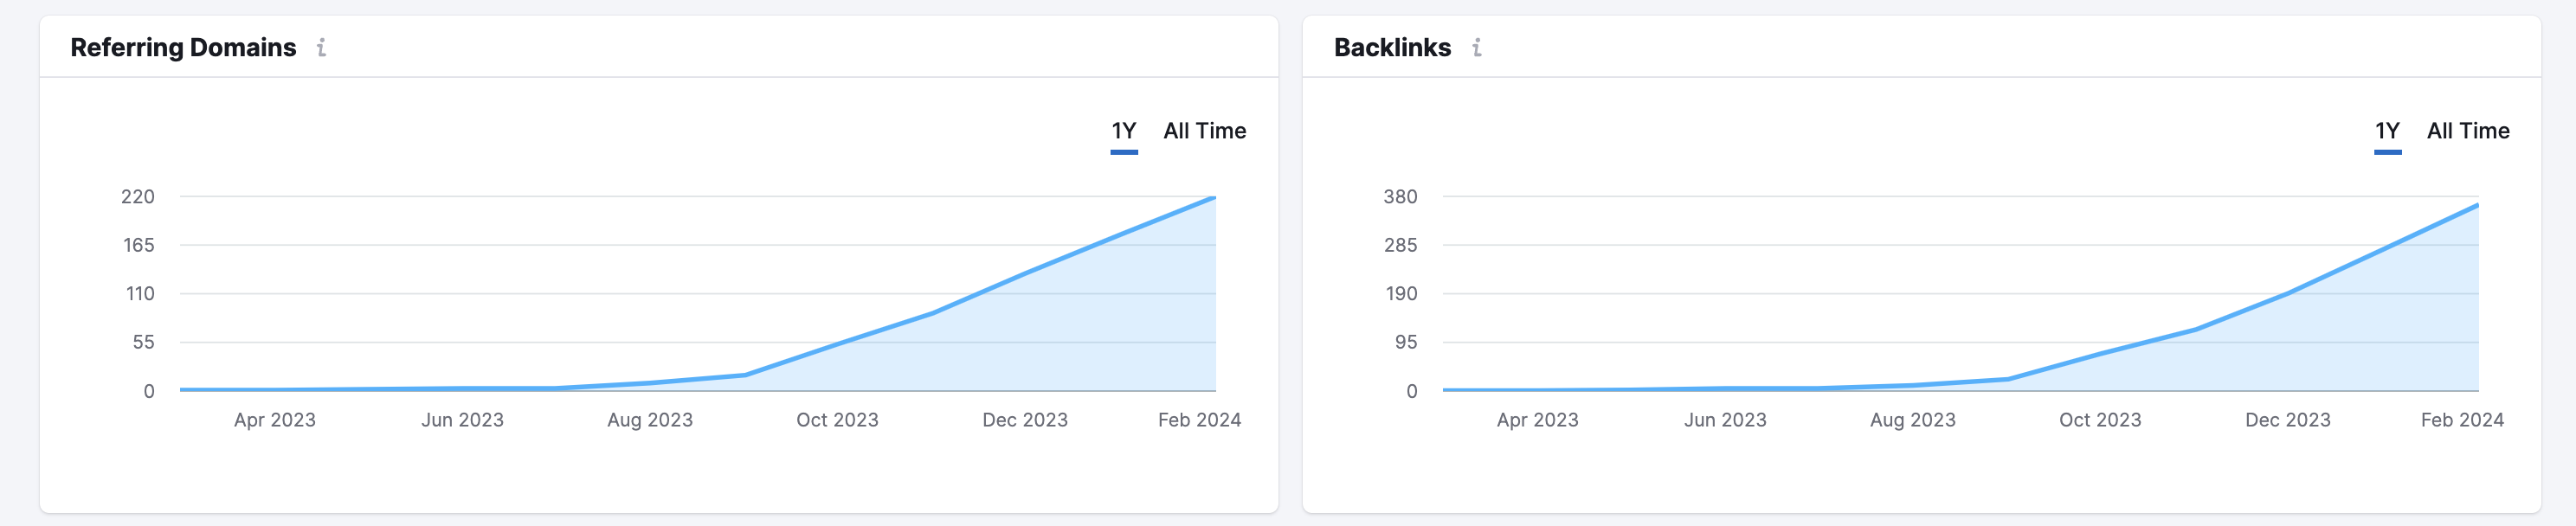 backlink graphs 